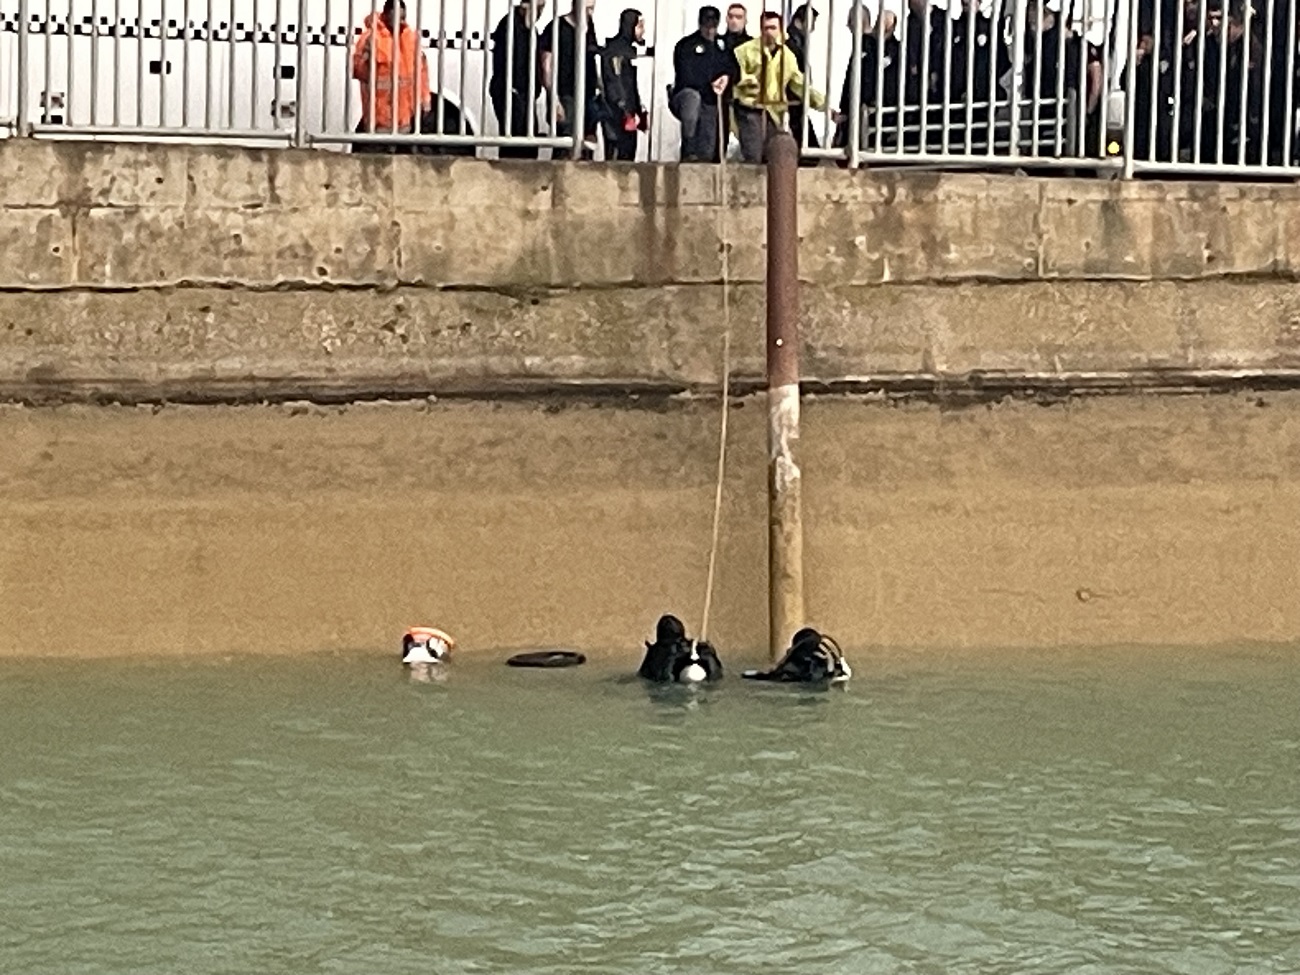 Sulama kanalında kaybolan  çocuklardan birinin cesedi bulundu